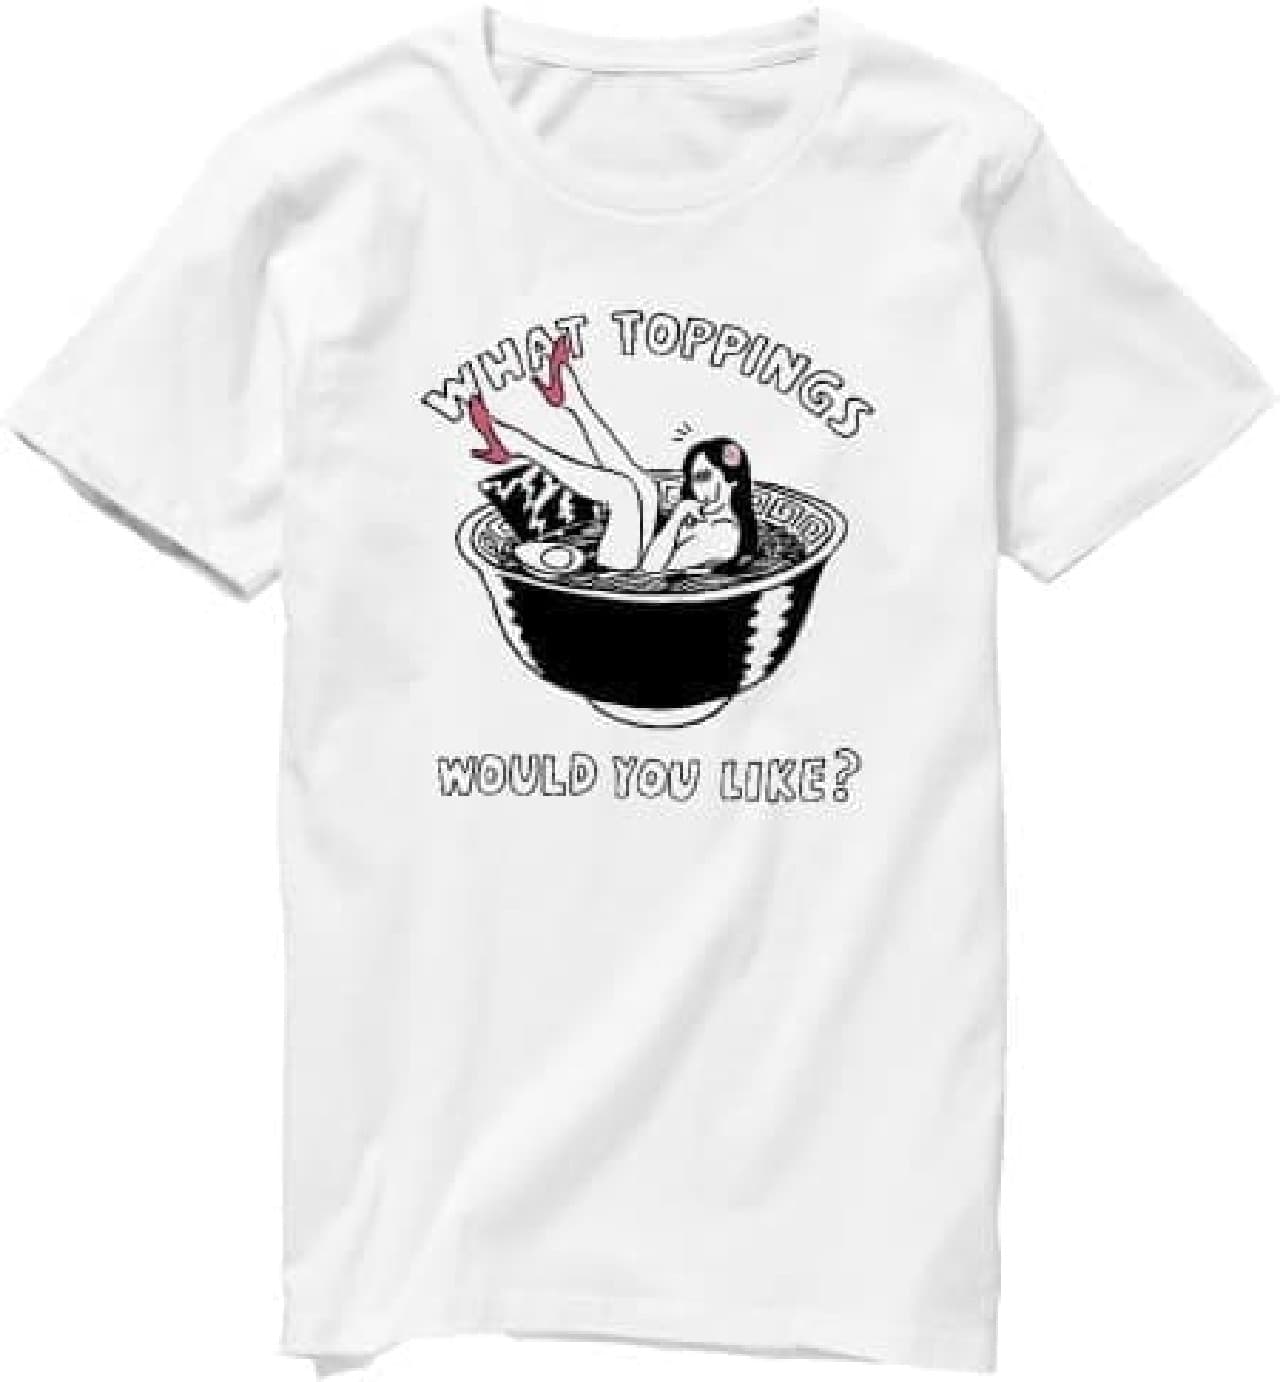 "Free toppings as many times as you like" Original ramen T-shirt